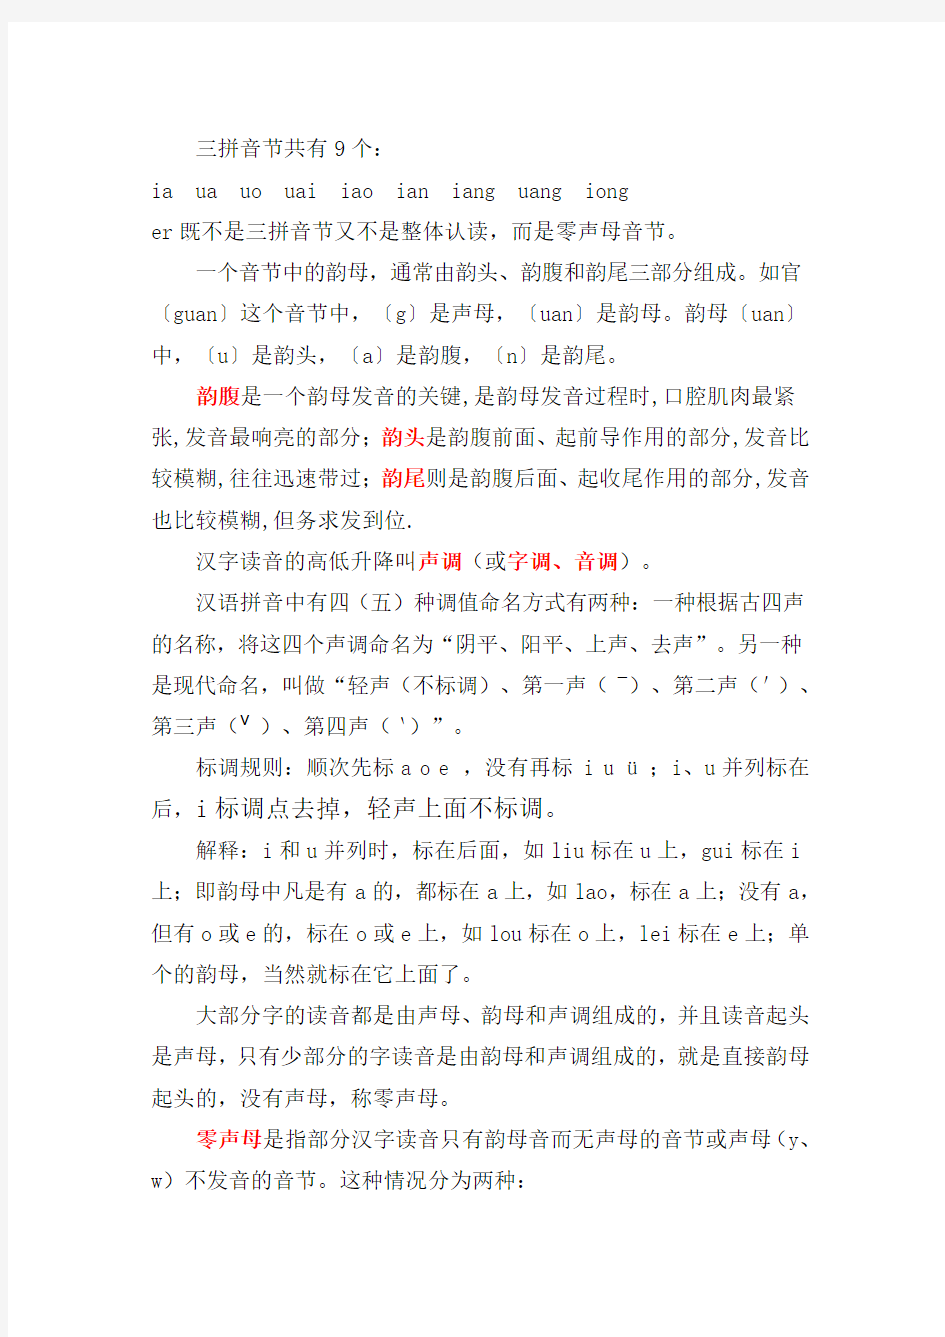 现代汉语拼音(含新华字典里四个特殊汉语拼音)